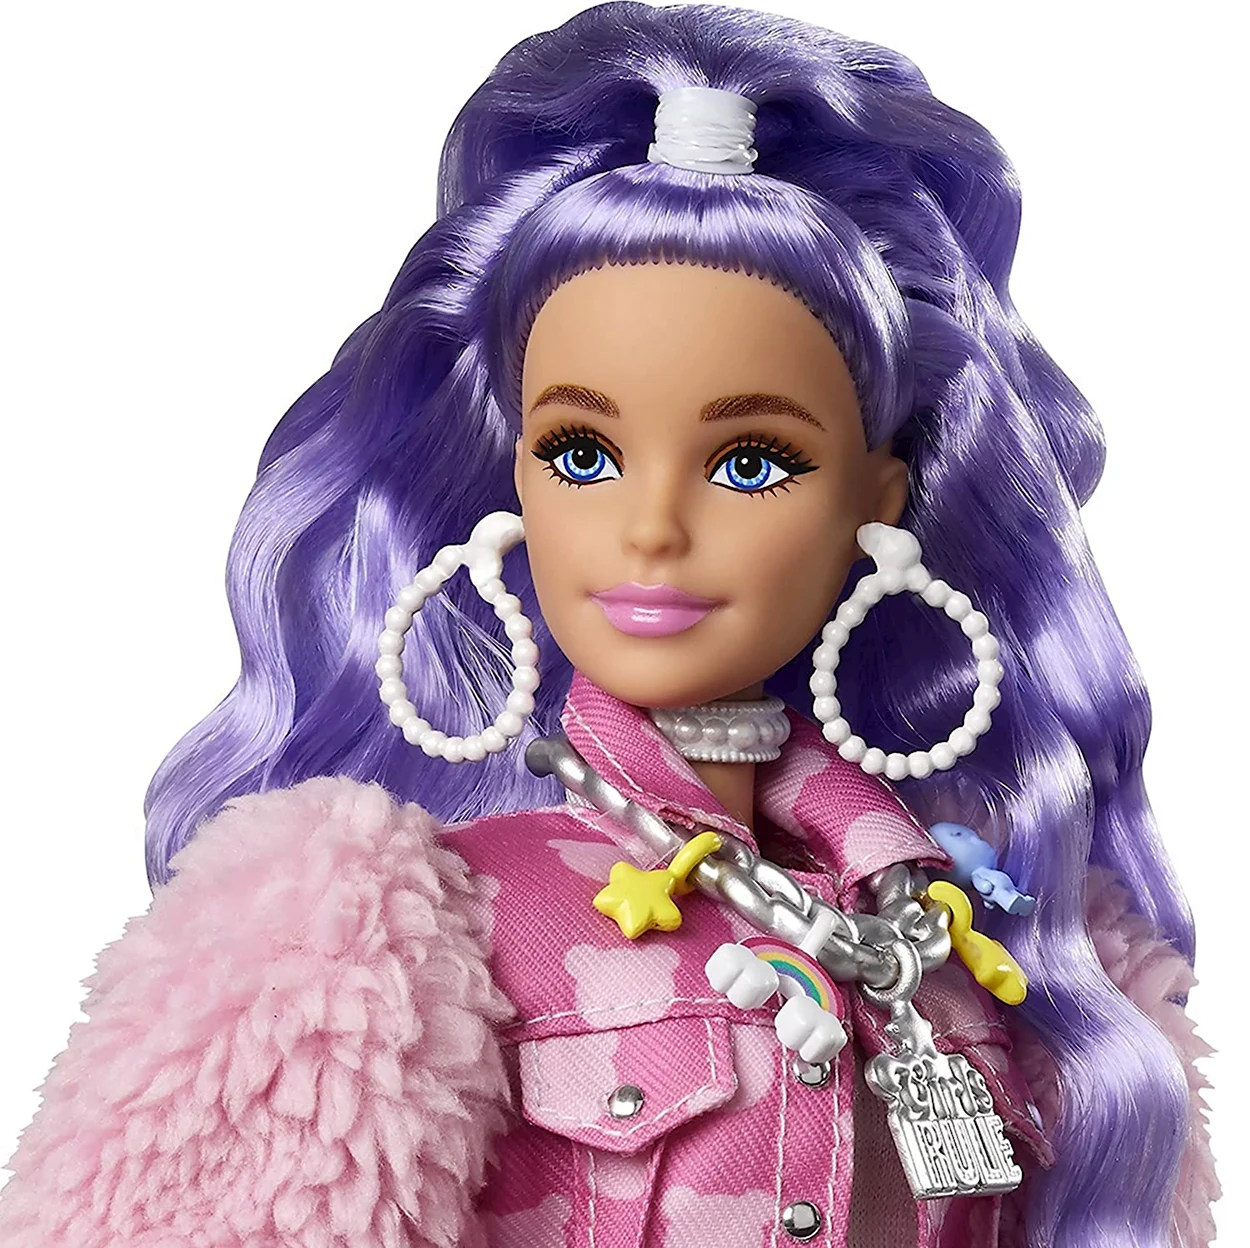 Кукла Барби Экстра Милли с сиреневыми волосами. Игрушка